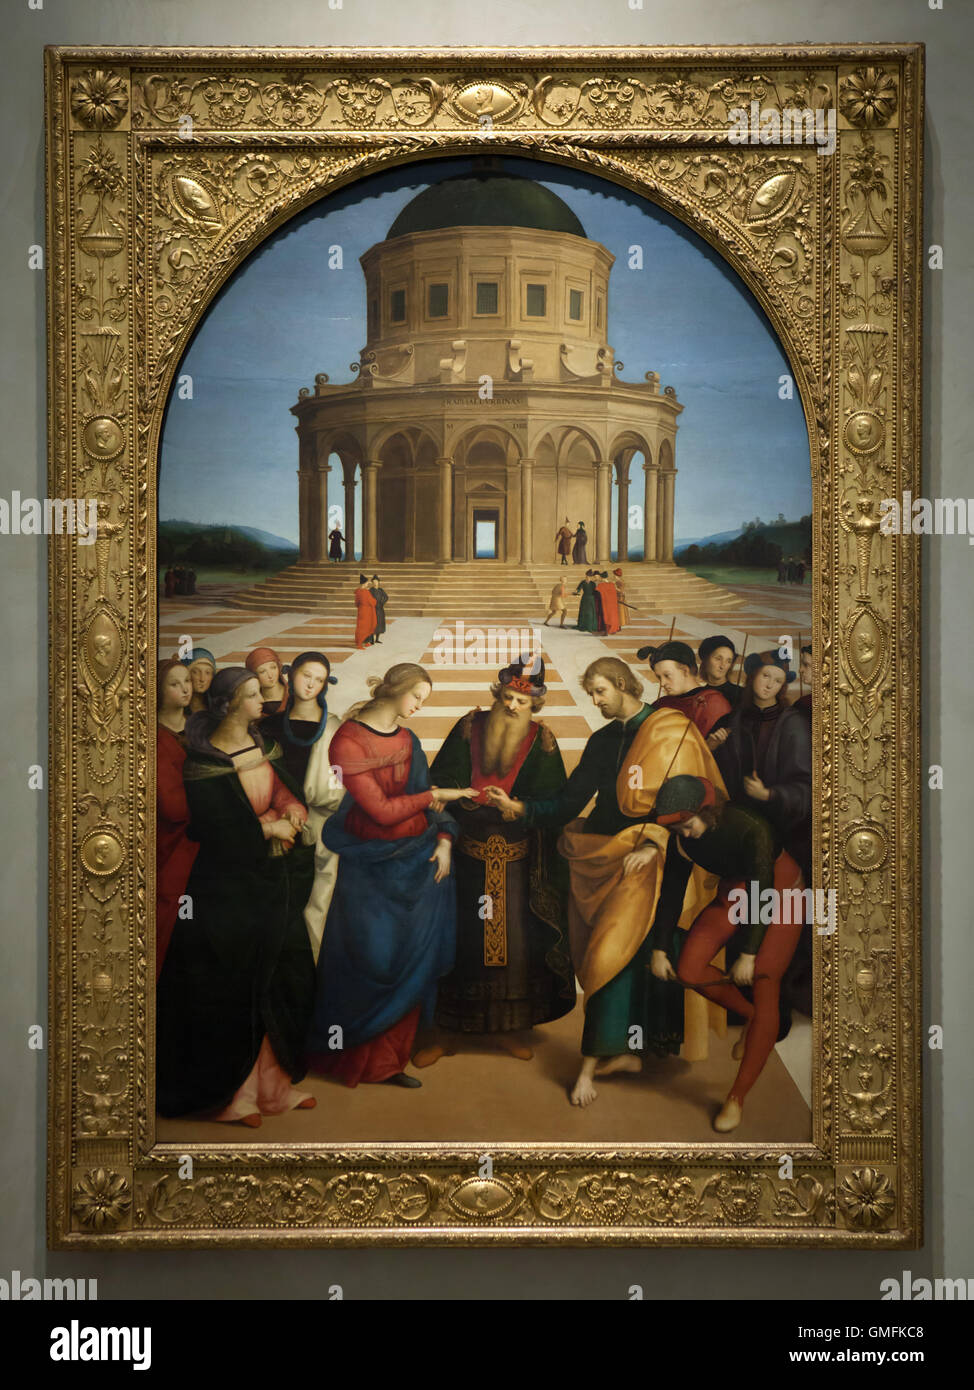 Peinture 'Le mariage de la Vierge", également connu sous le nom de 'lo Sposalizio' (1504) par le peintre italien de la Renaissance Raphaël affiche dans la Pinacoteca di Brera à Milan, Lombardie, Italie. Banque D'Images